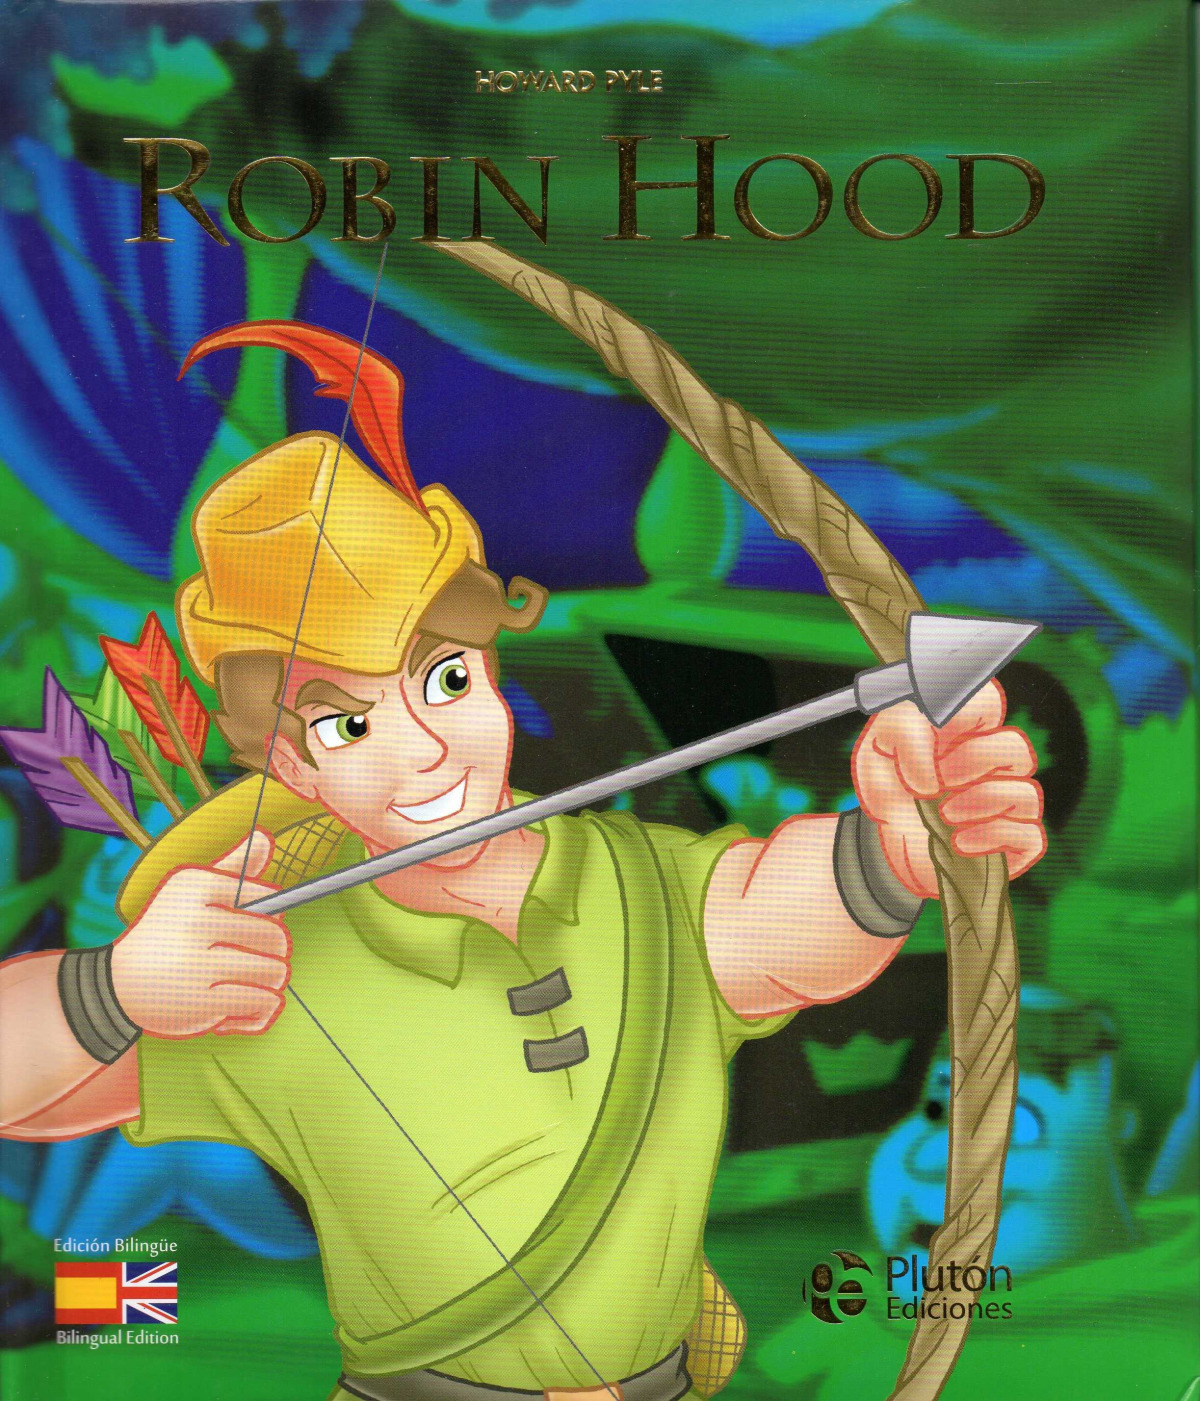 Robin hood / robin hood - Pyle Howard